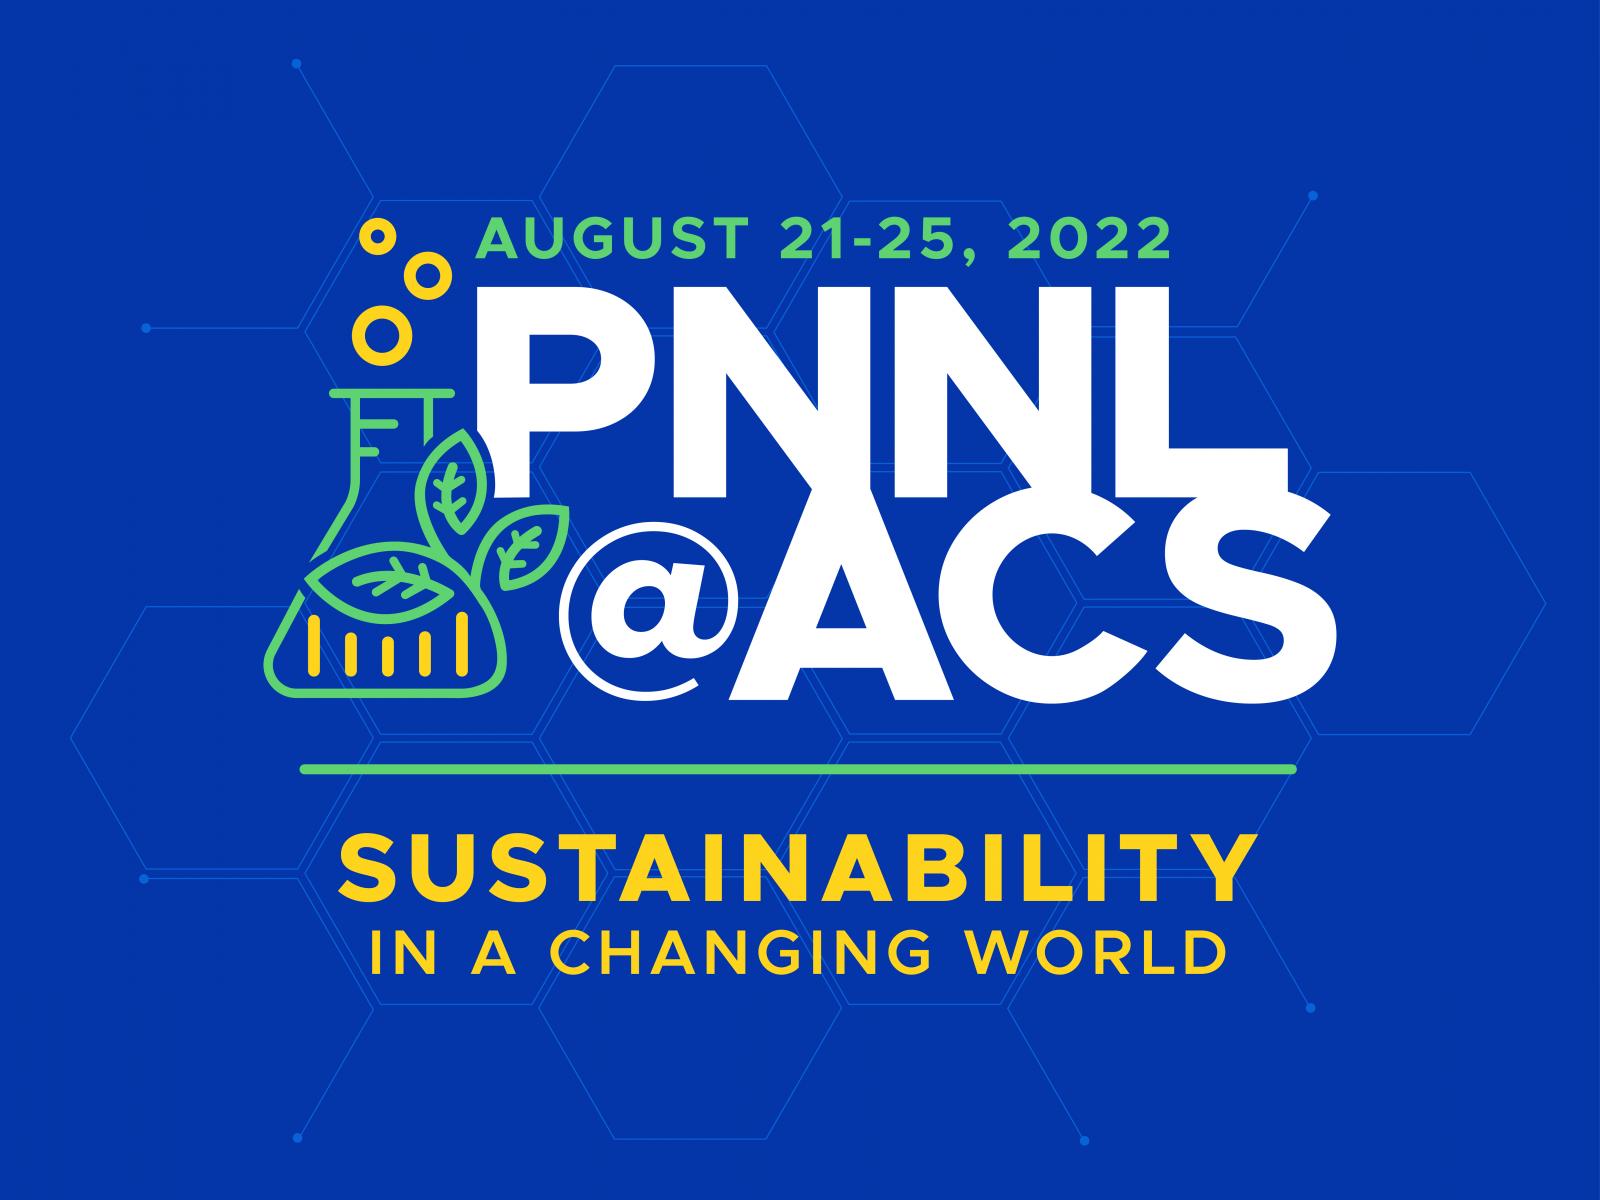 PNNL ACS Fall 2022 Conference PNNL